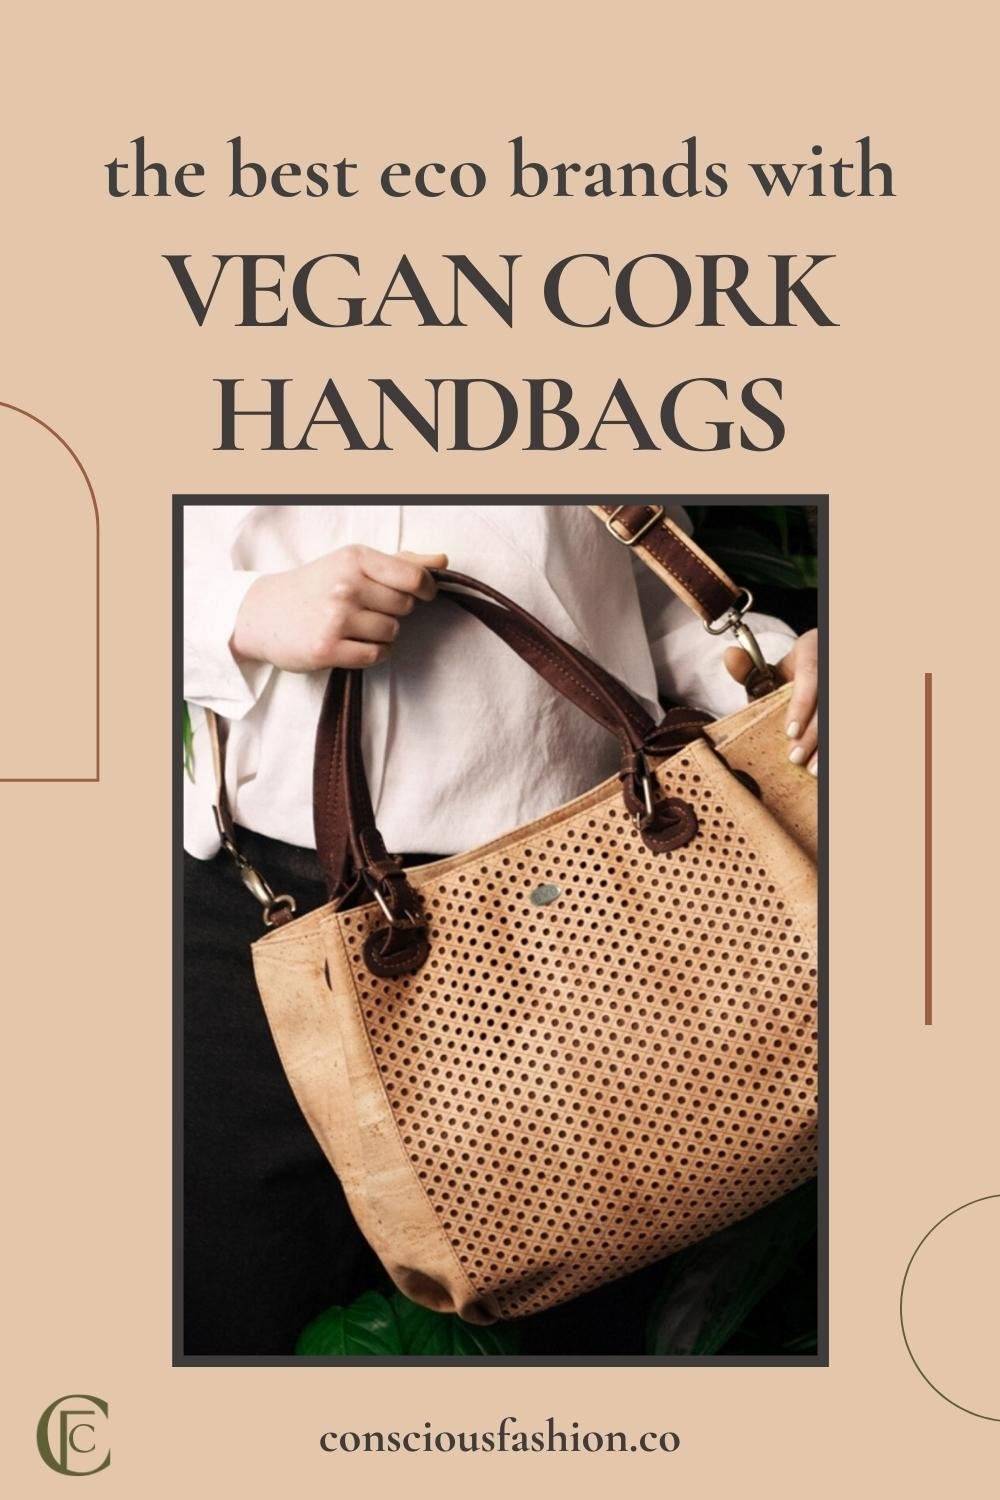 Kork Goods // Inspired by Kork // Sustainable Cork Bags & Goods